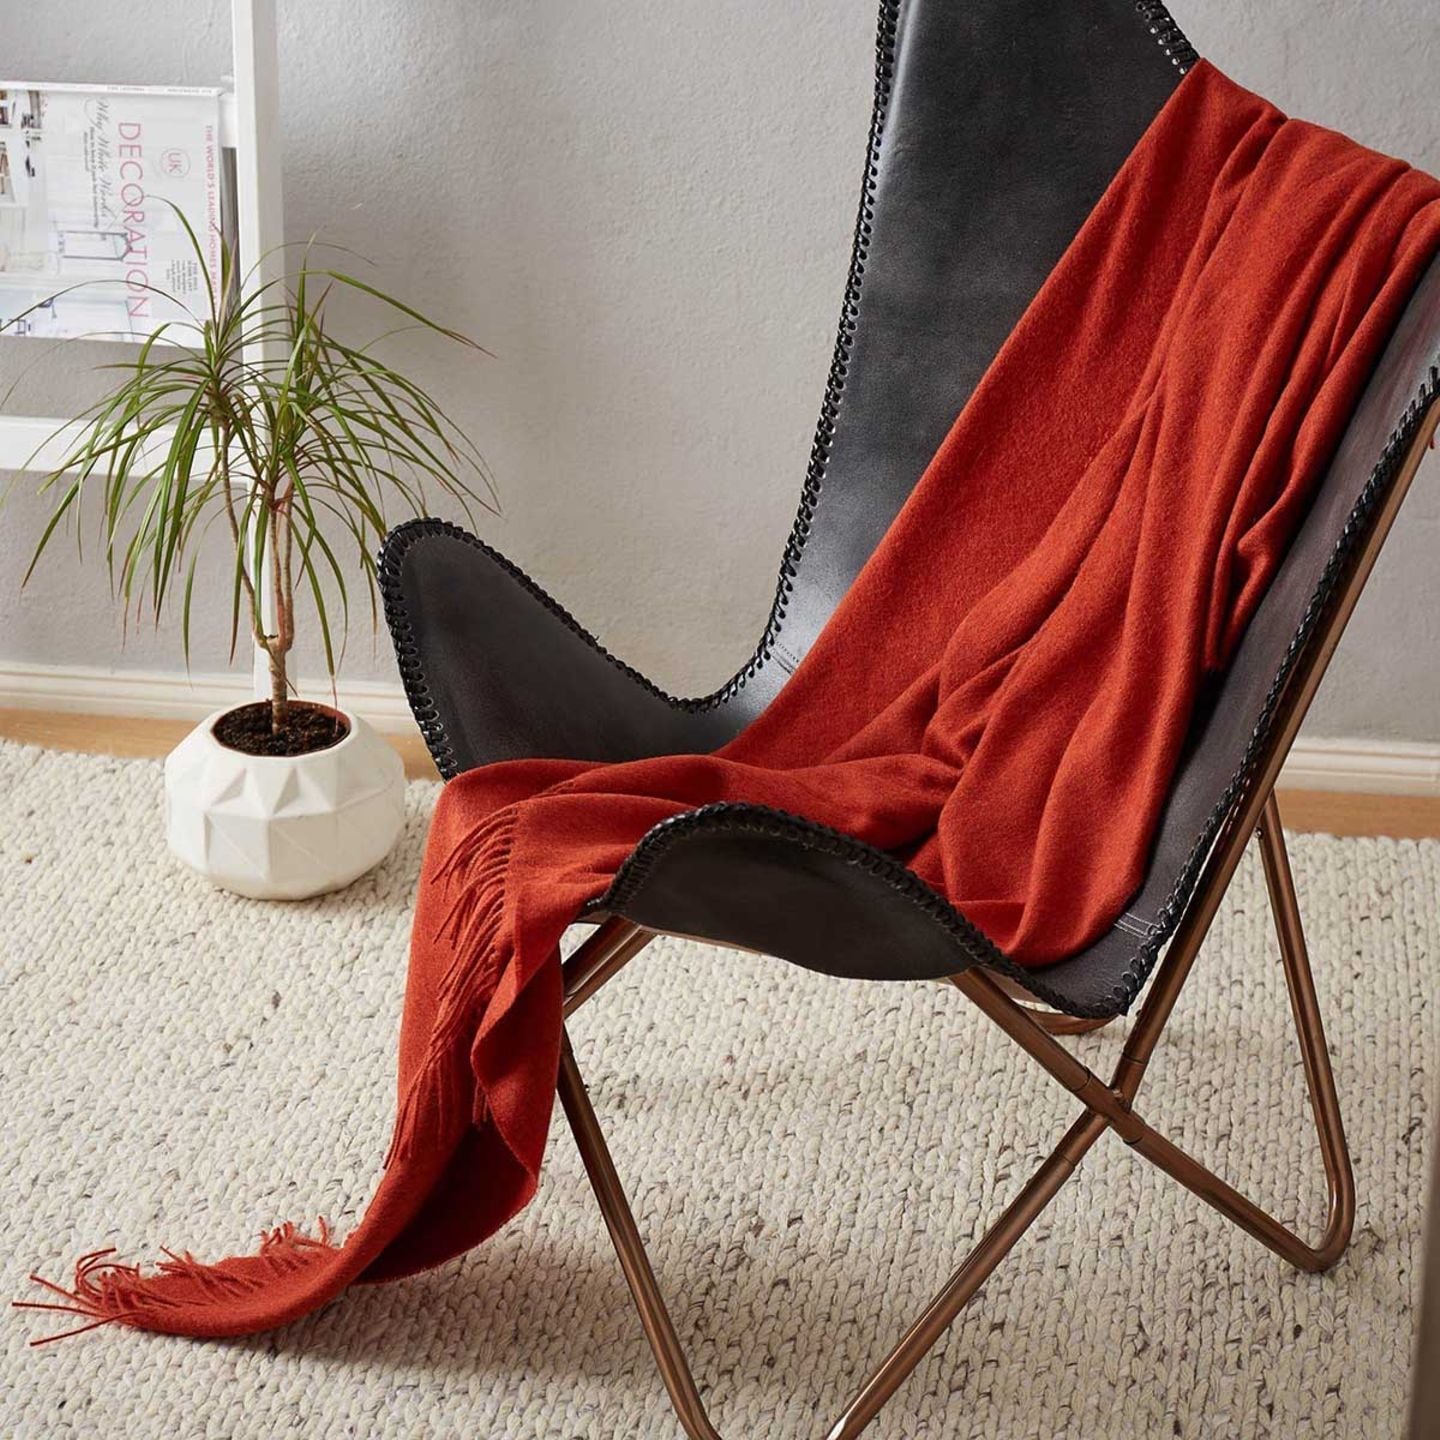 Rote Decke auf einem Sessel